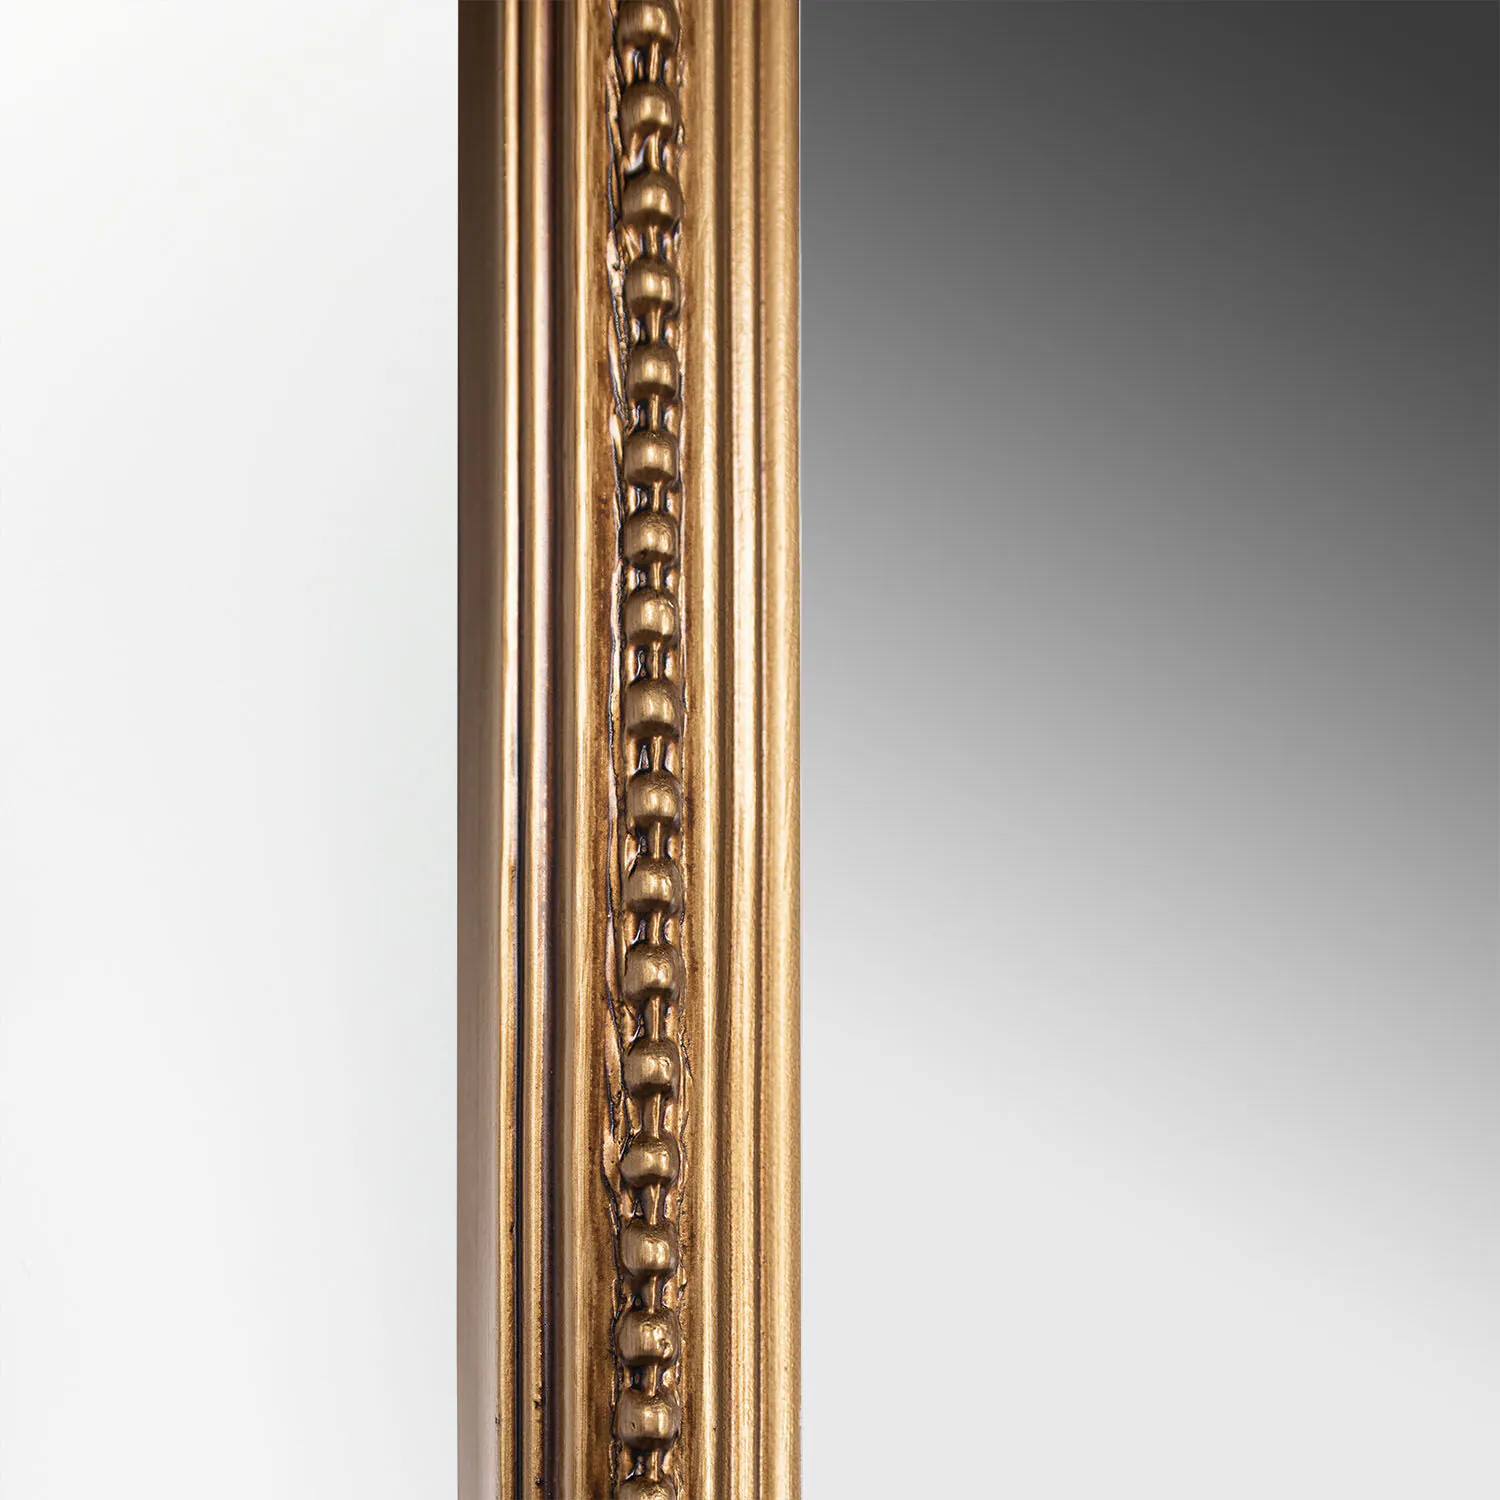 Stor Helkroppsspegel Valvformad 120x200cm Guld Mary